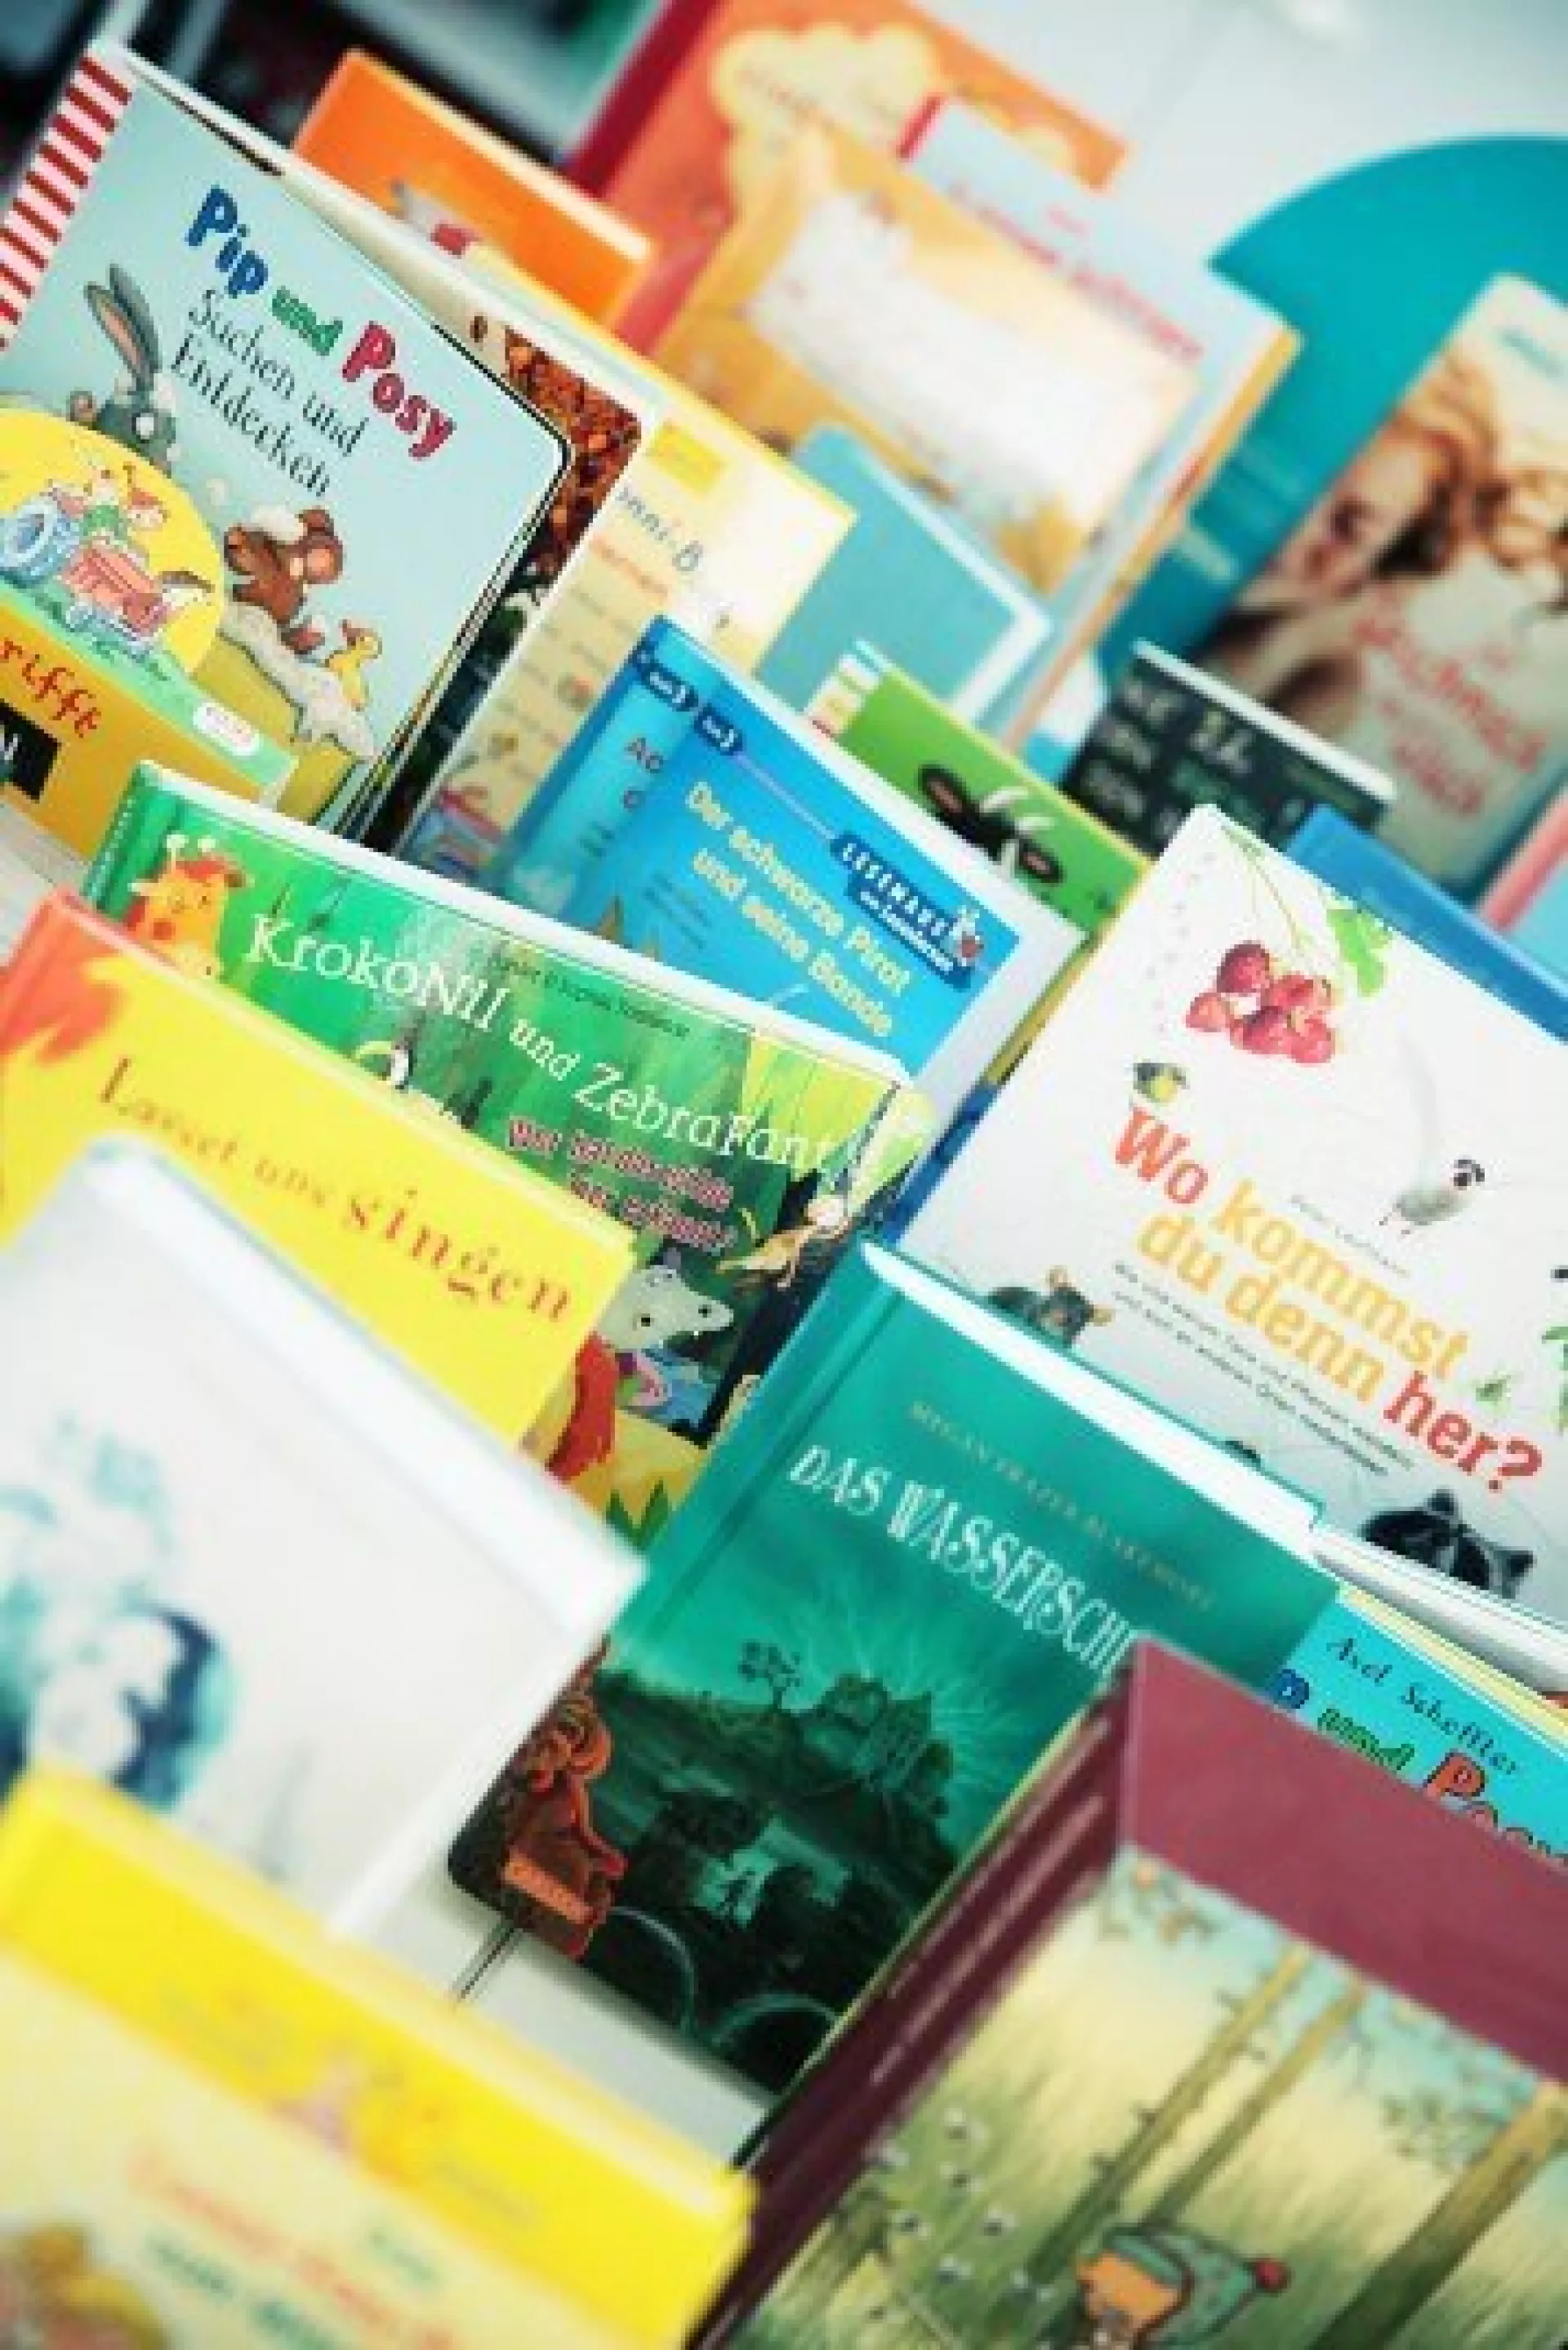 Auswahl diverser Kinder- und Jugendbücher